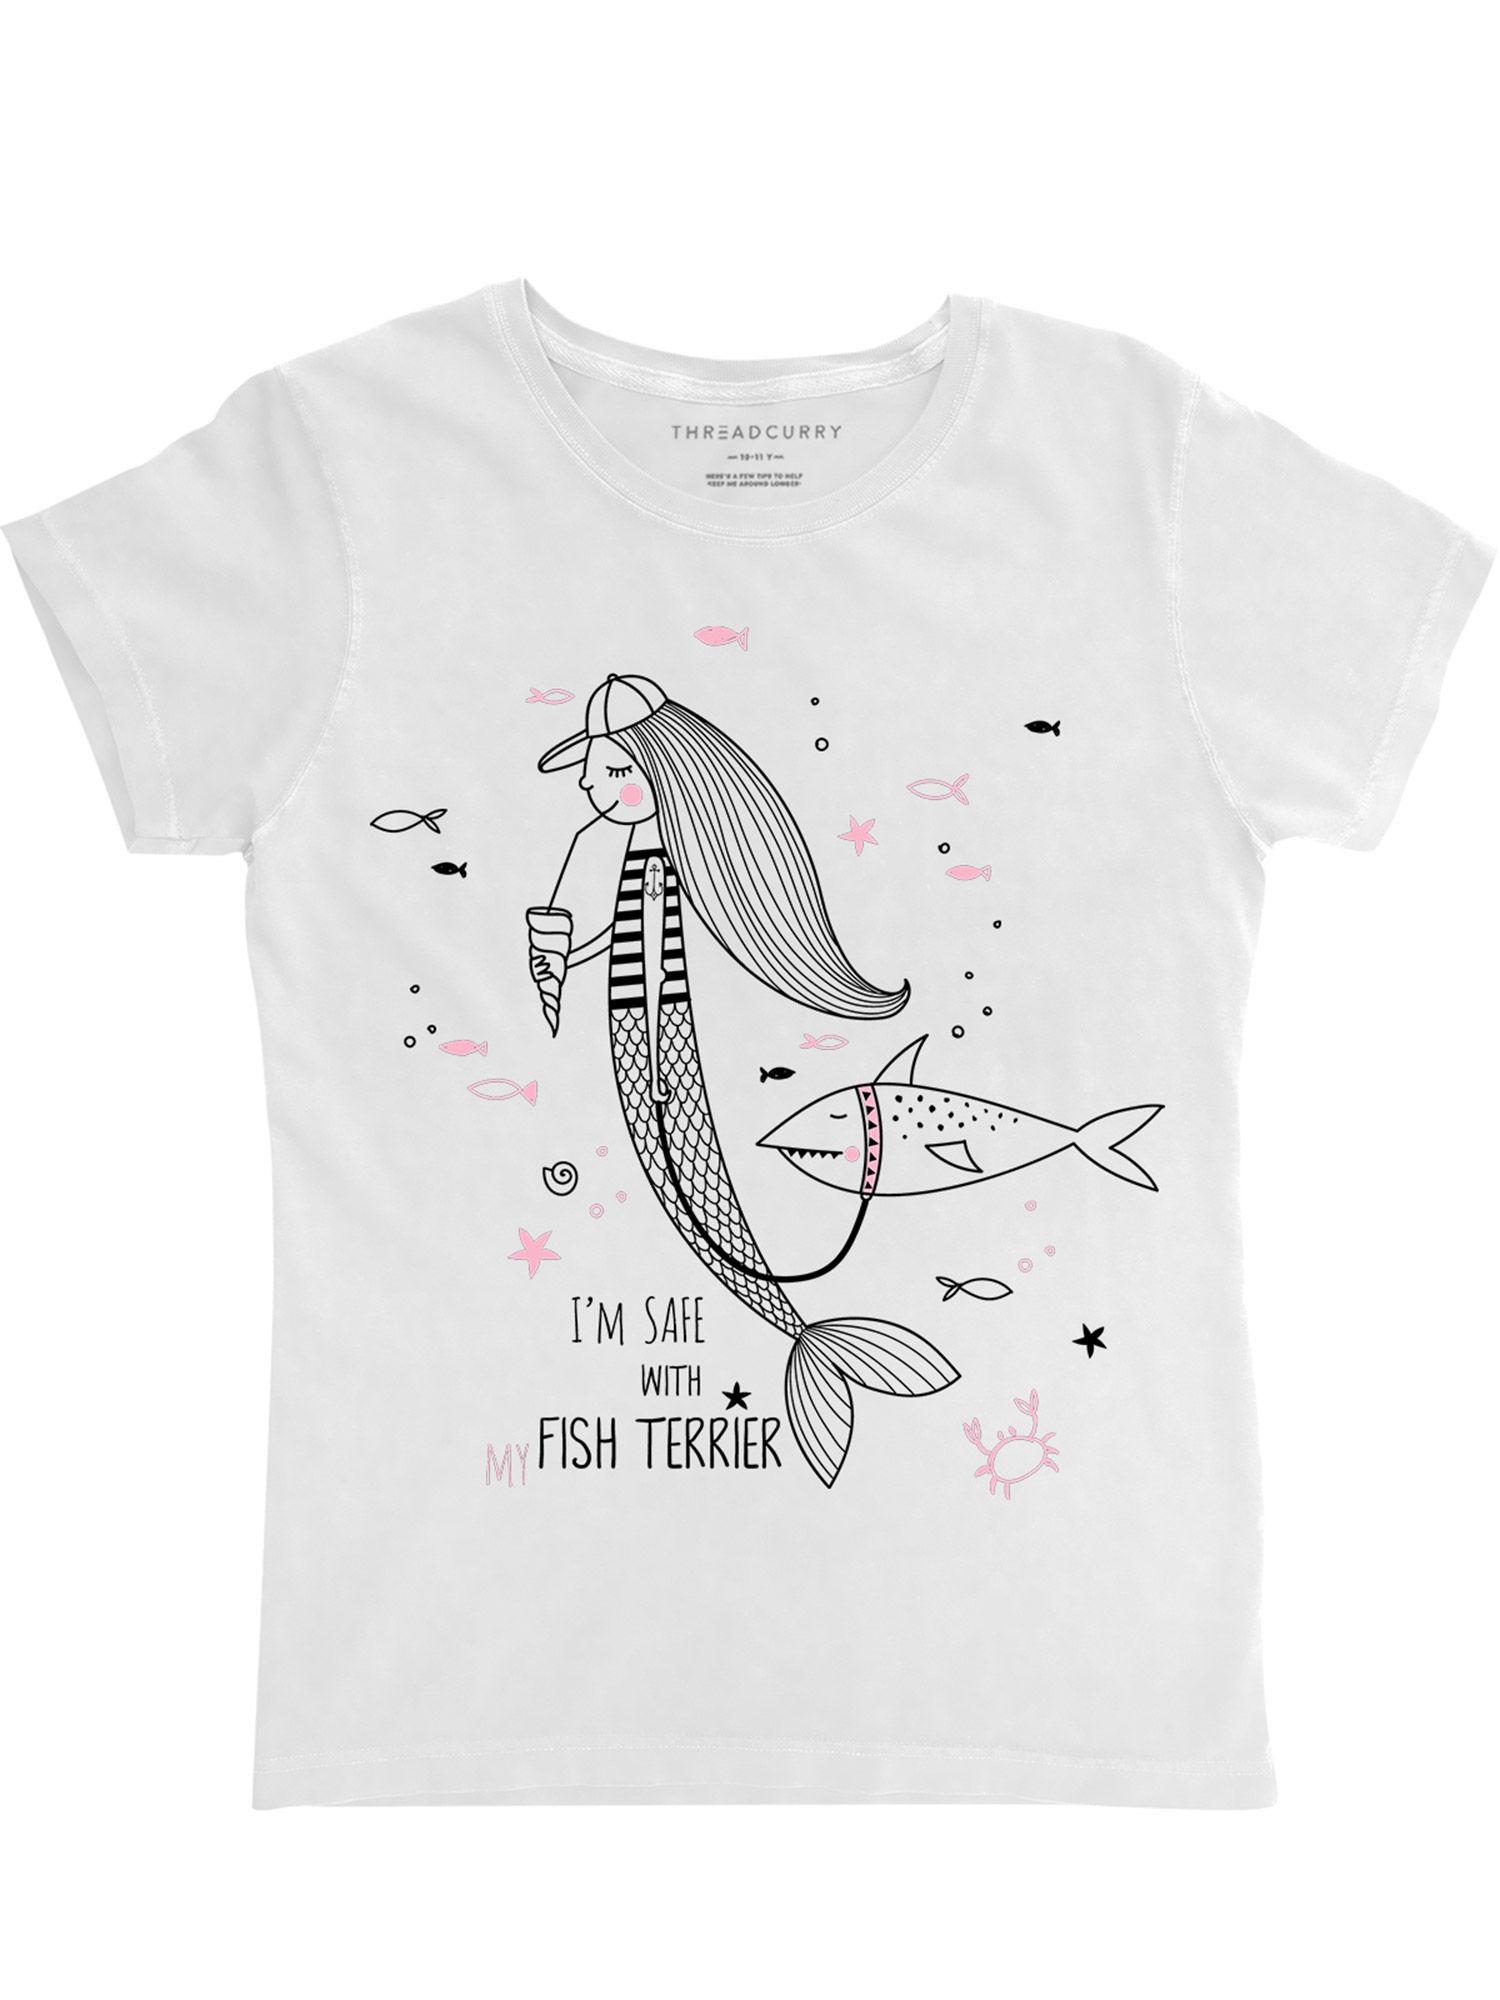 pink mermaid girls graphic printed t-shirt - white